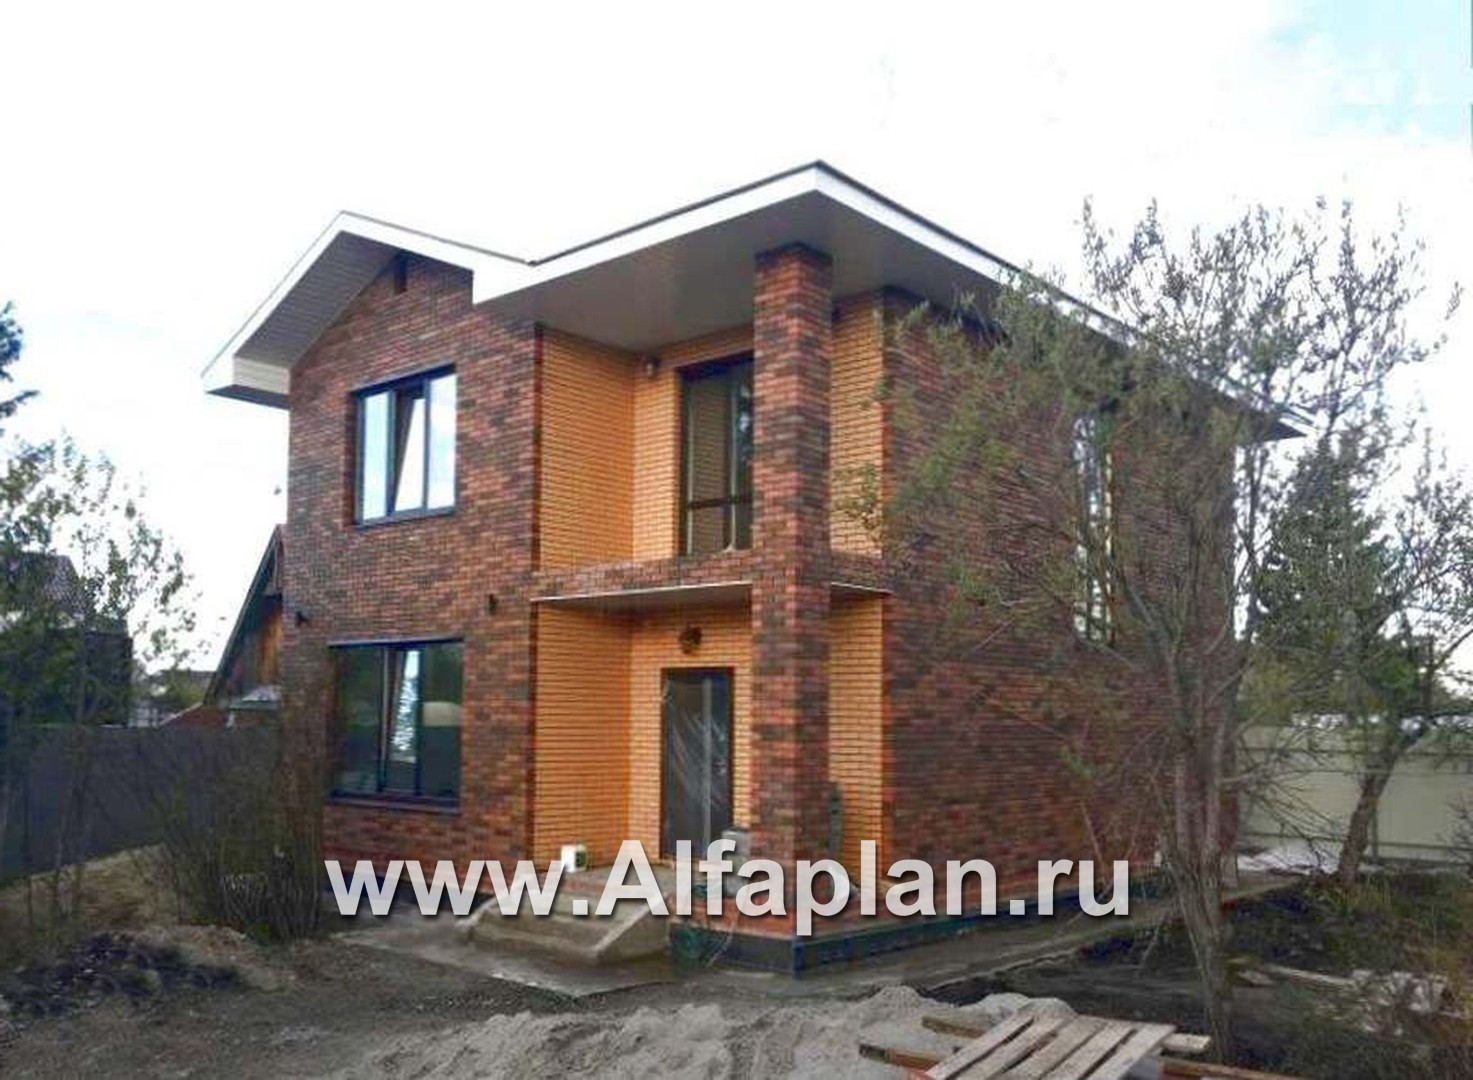 Проекты домов Альфаплан - Кирпичный дом «Серебро» для небольшой семьи - дополнительное изображение №2